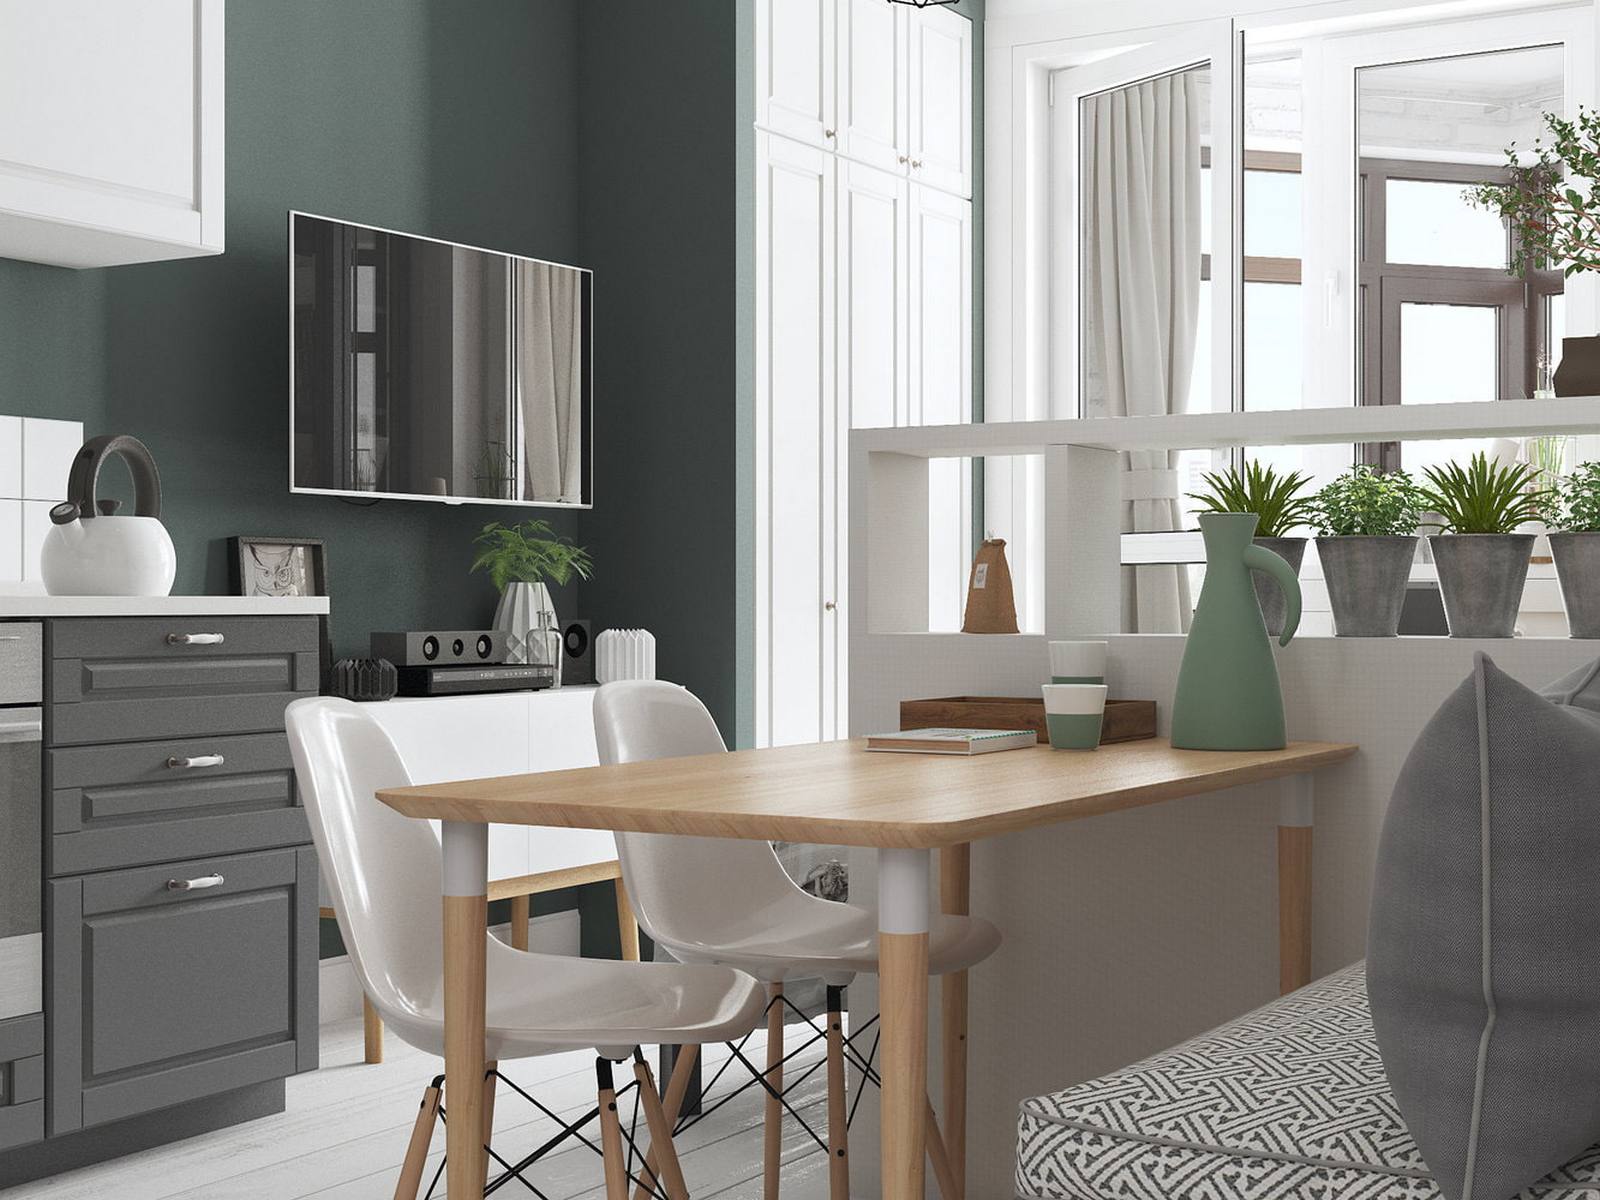 Thay vì sử dụng bàn nước, Cubiq Studio đã lựa chọn chiếc bàn gỗ dài kết hợp cặp ghế màu trắng để kết hợp phòng khách với khu vực ăn uống nhằm tiết kiệm diện tích.